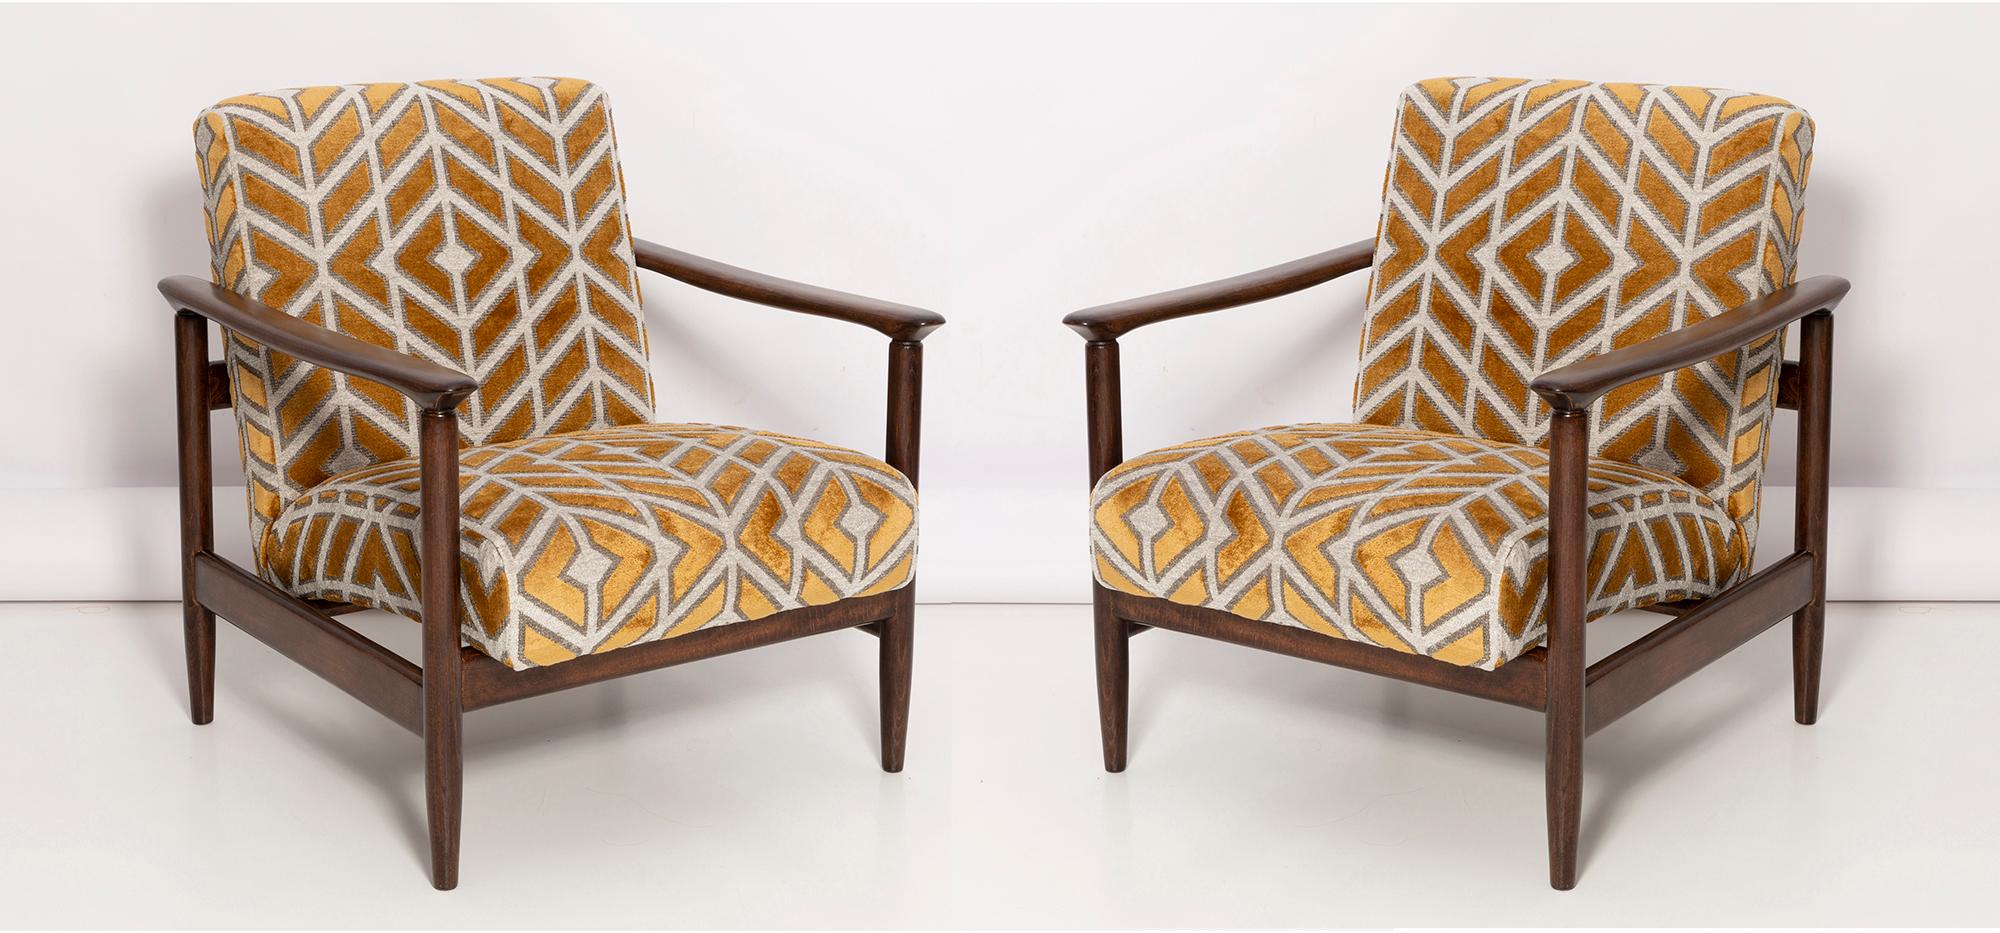 Ein Paar Sessel GFM-142 und Hocker aus der Mitte des Jahrhunderts, entworfen von Edmund Homa. Die Möbel wurden in den 1960er Jahren in der Möbelfabrik Gosciecinska hergestellt. Sie sind aus massivem Buchenholz gefertigt. Der Sessel GFM-142 gilt als